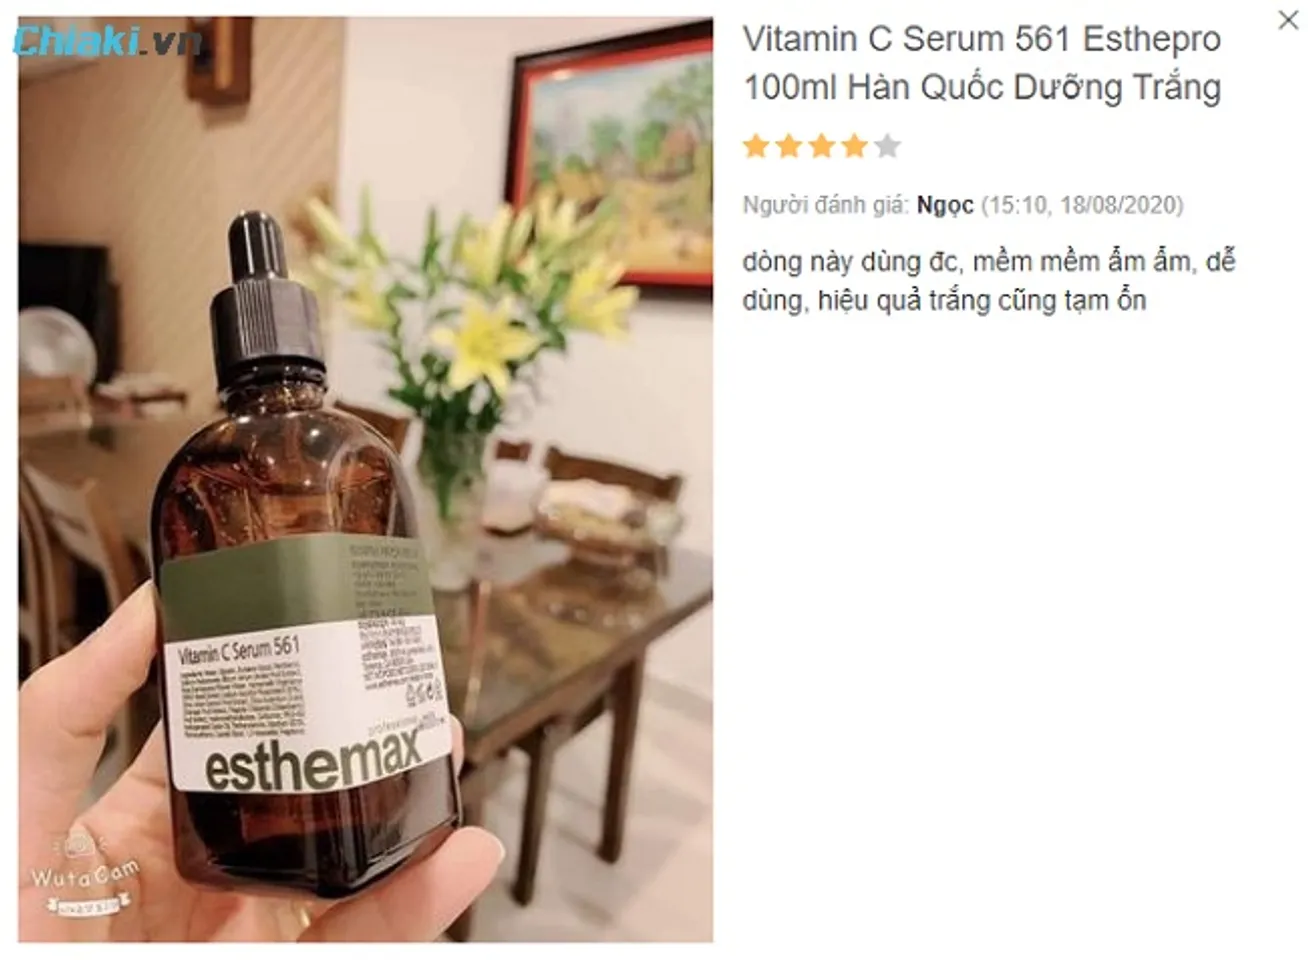 Review Serum Vitamin C 561 Esthepro từ người dùng